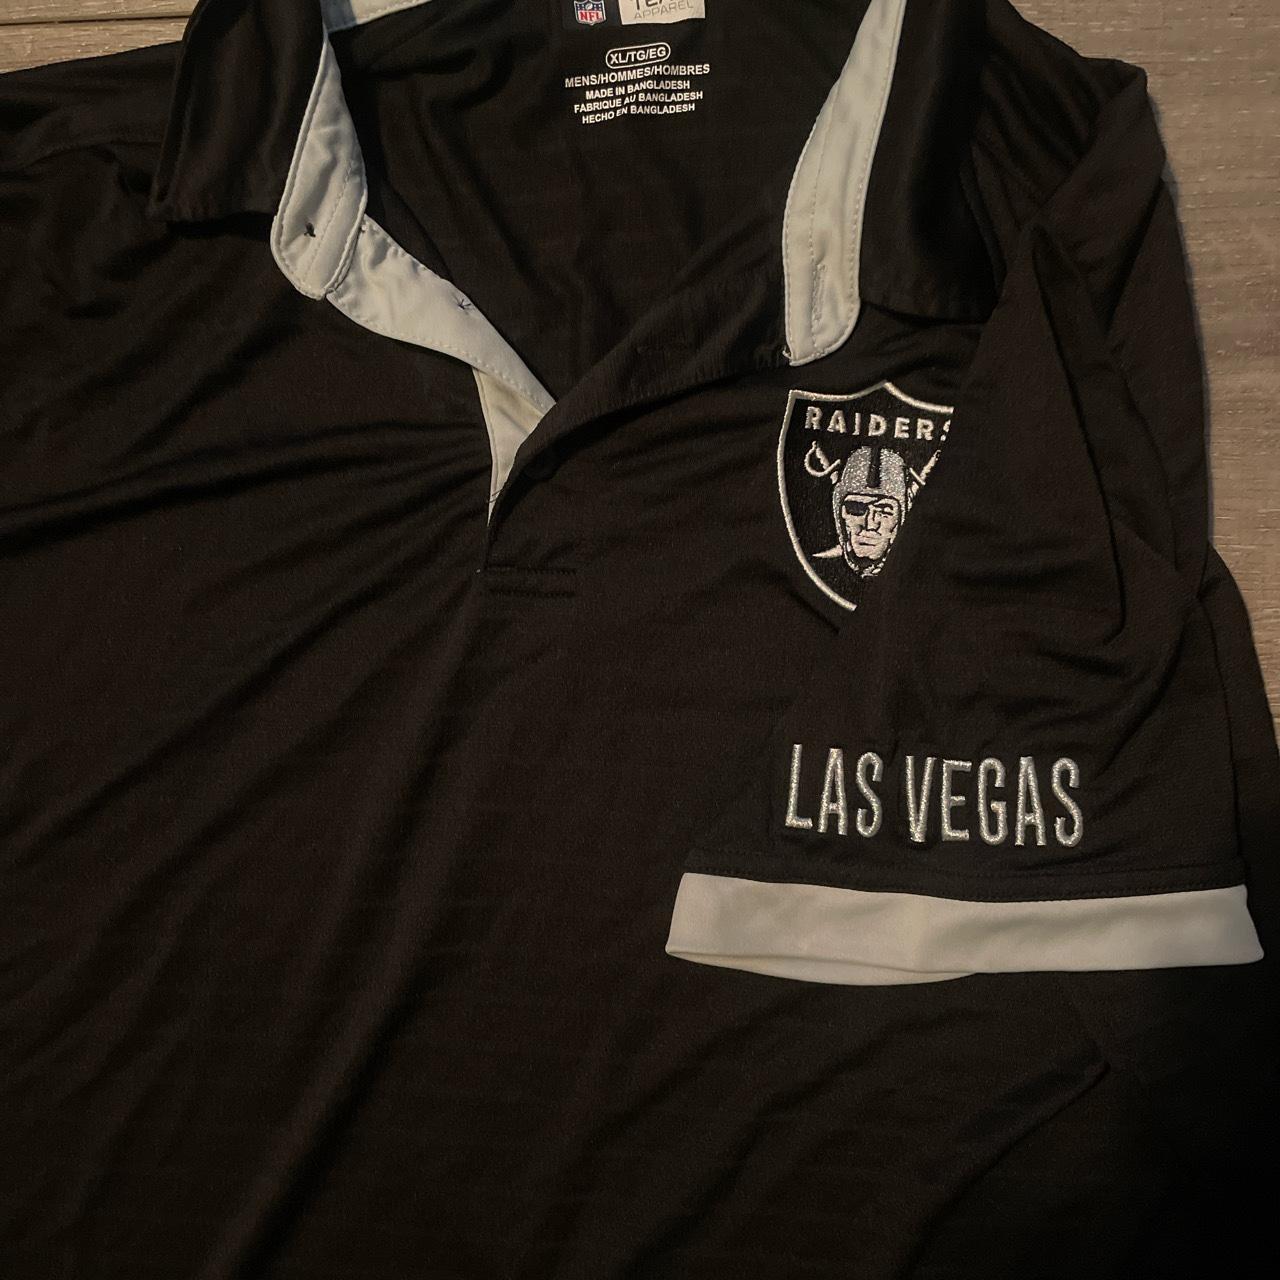 T-shirt Las Vegas Raiders - T-shirts & Polo shirts - Clothing - Men